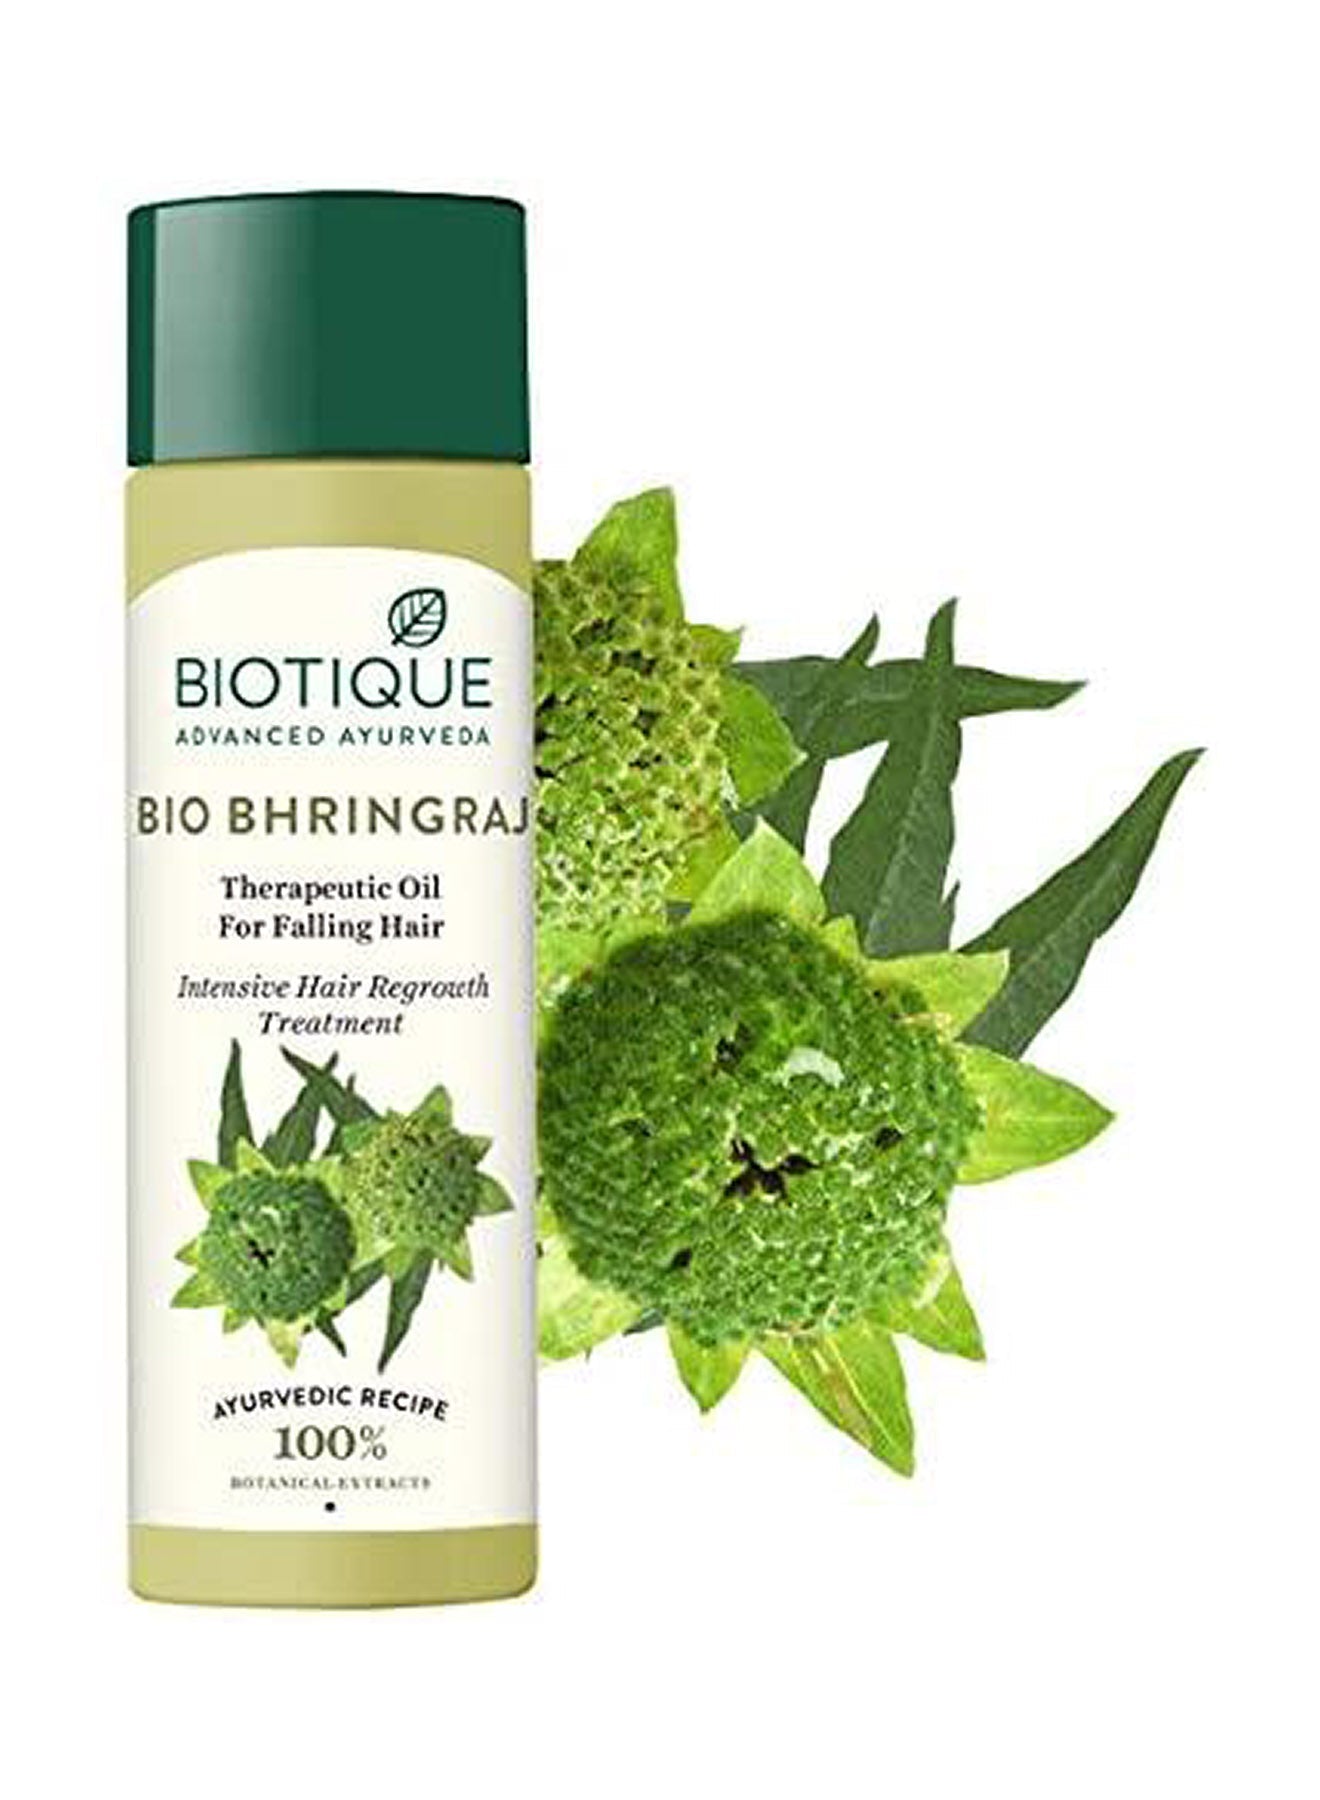 Biotique Botanicals Bhringraj Hair Oil 120ml Value Pack of 4 